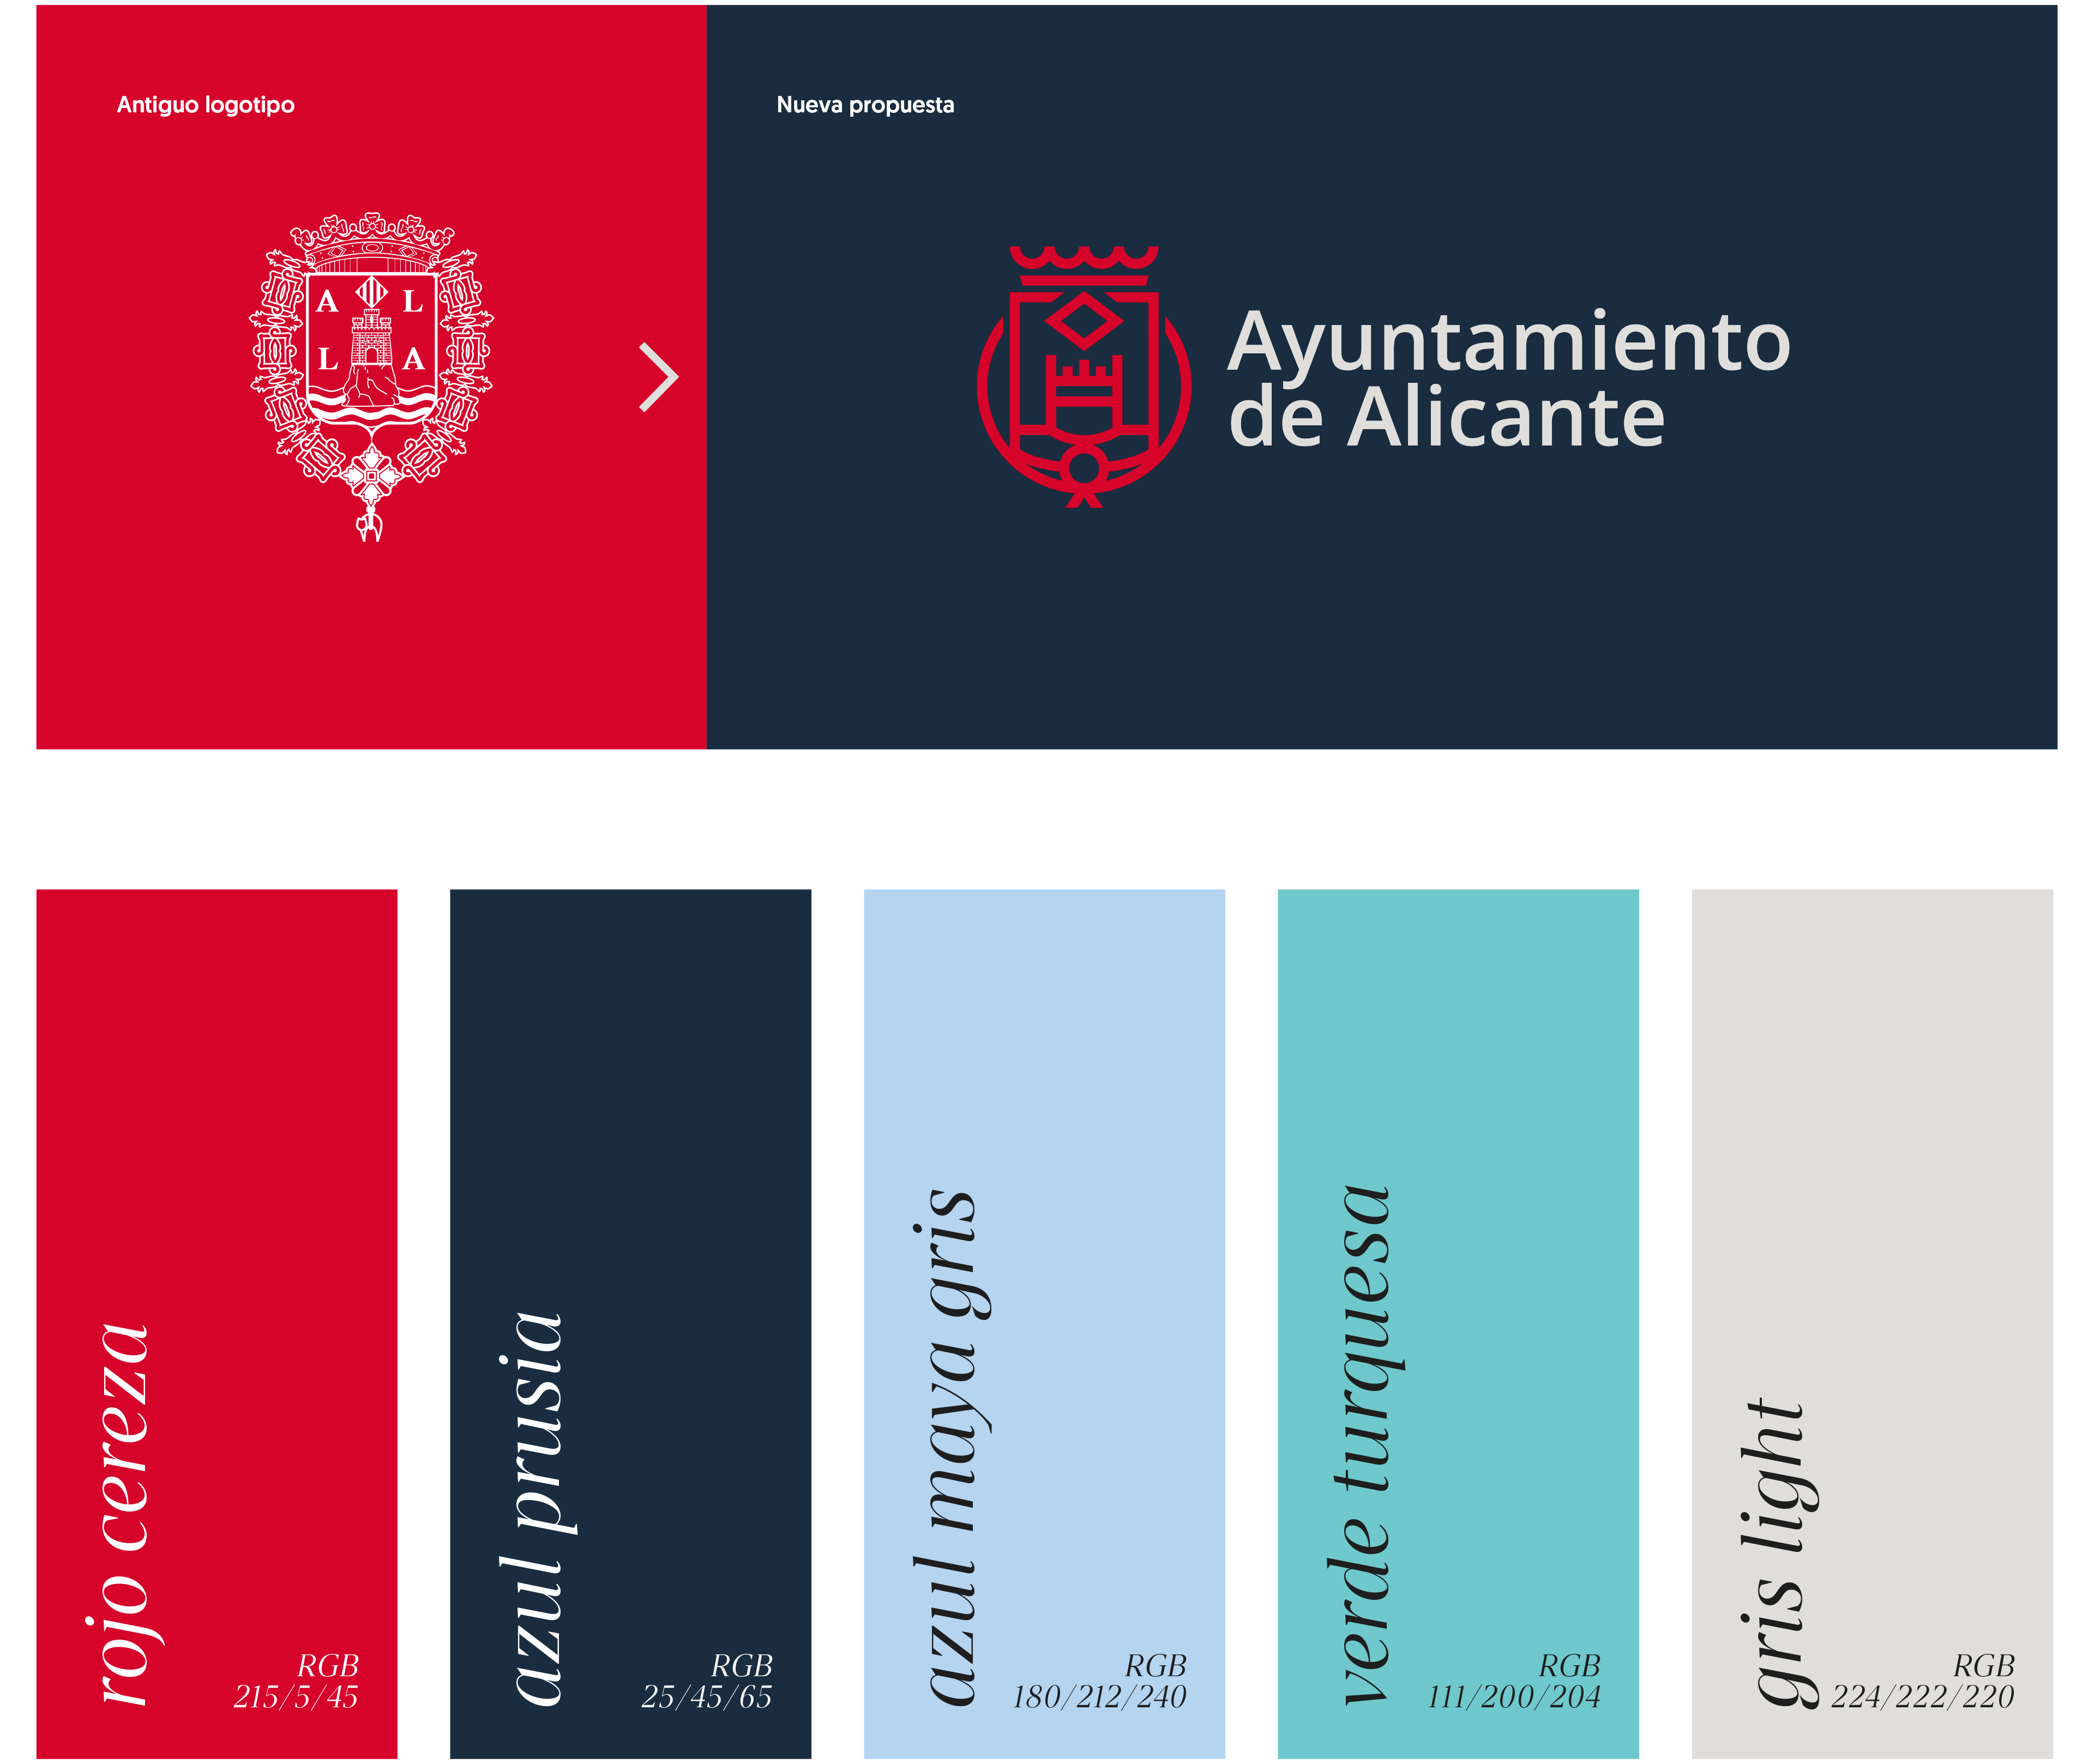 INUQ Estudio Diseño de logotipos en Elche y Alicante Branding Ayuntamiento de Alicante logotipo colores corporativos